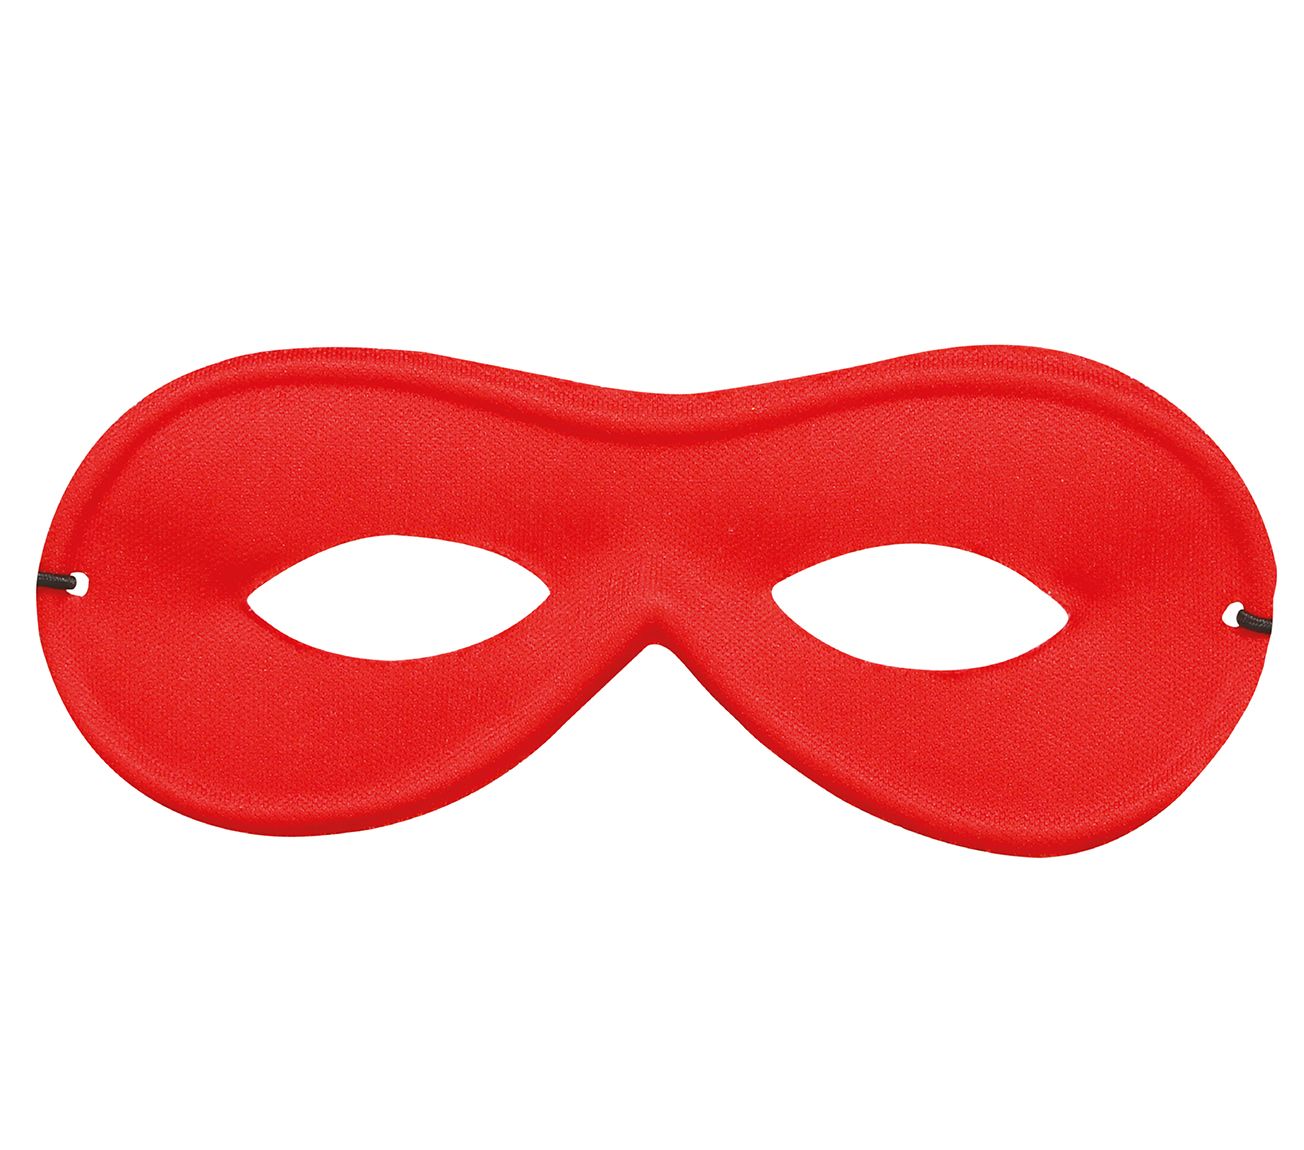 Rode oogmasker